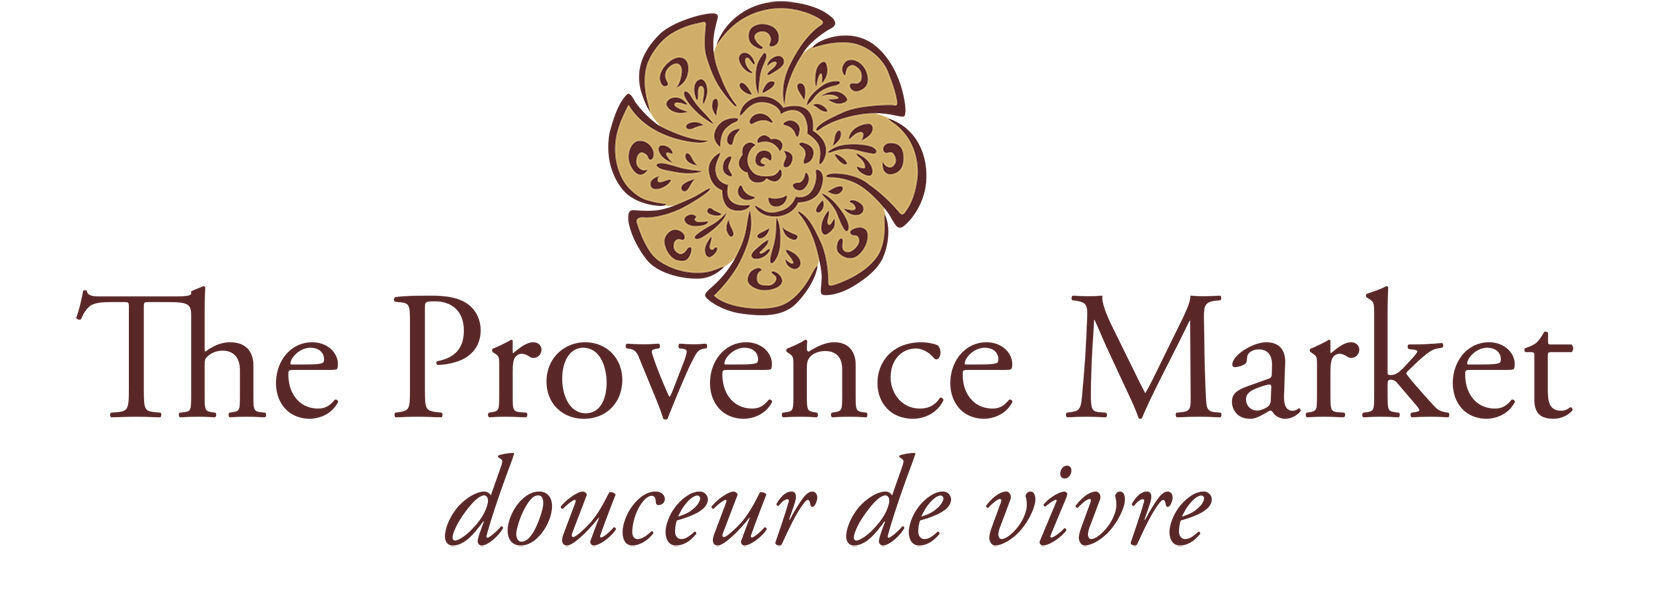 LOGO The Provence Market Provence Market Lifestyle Fashion